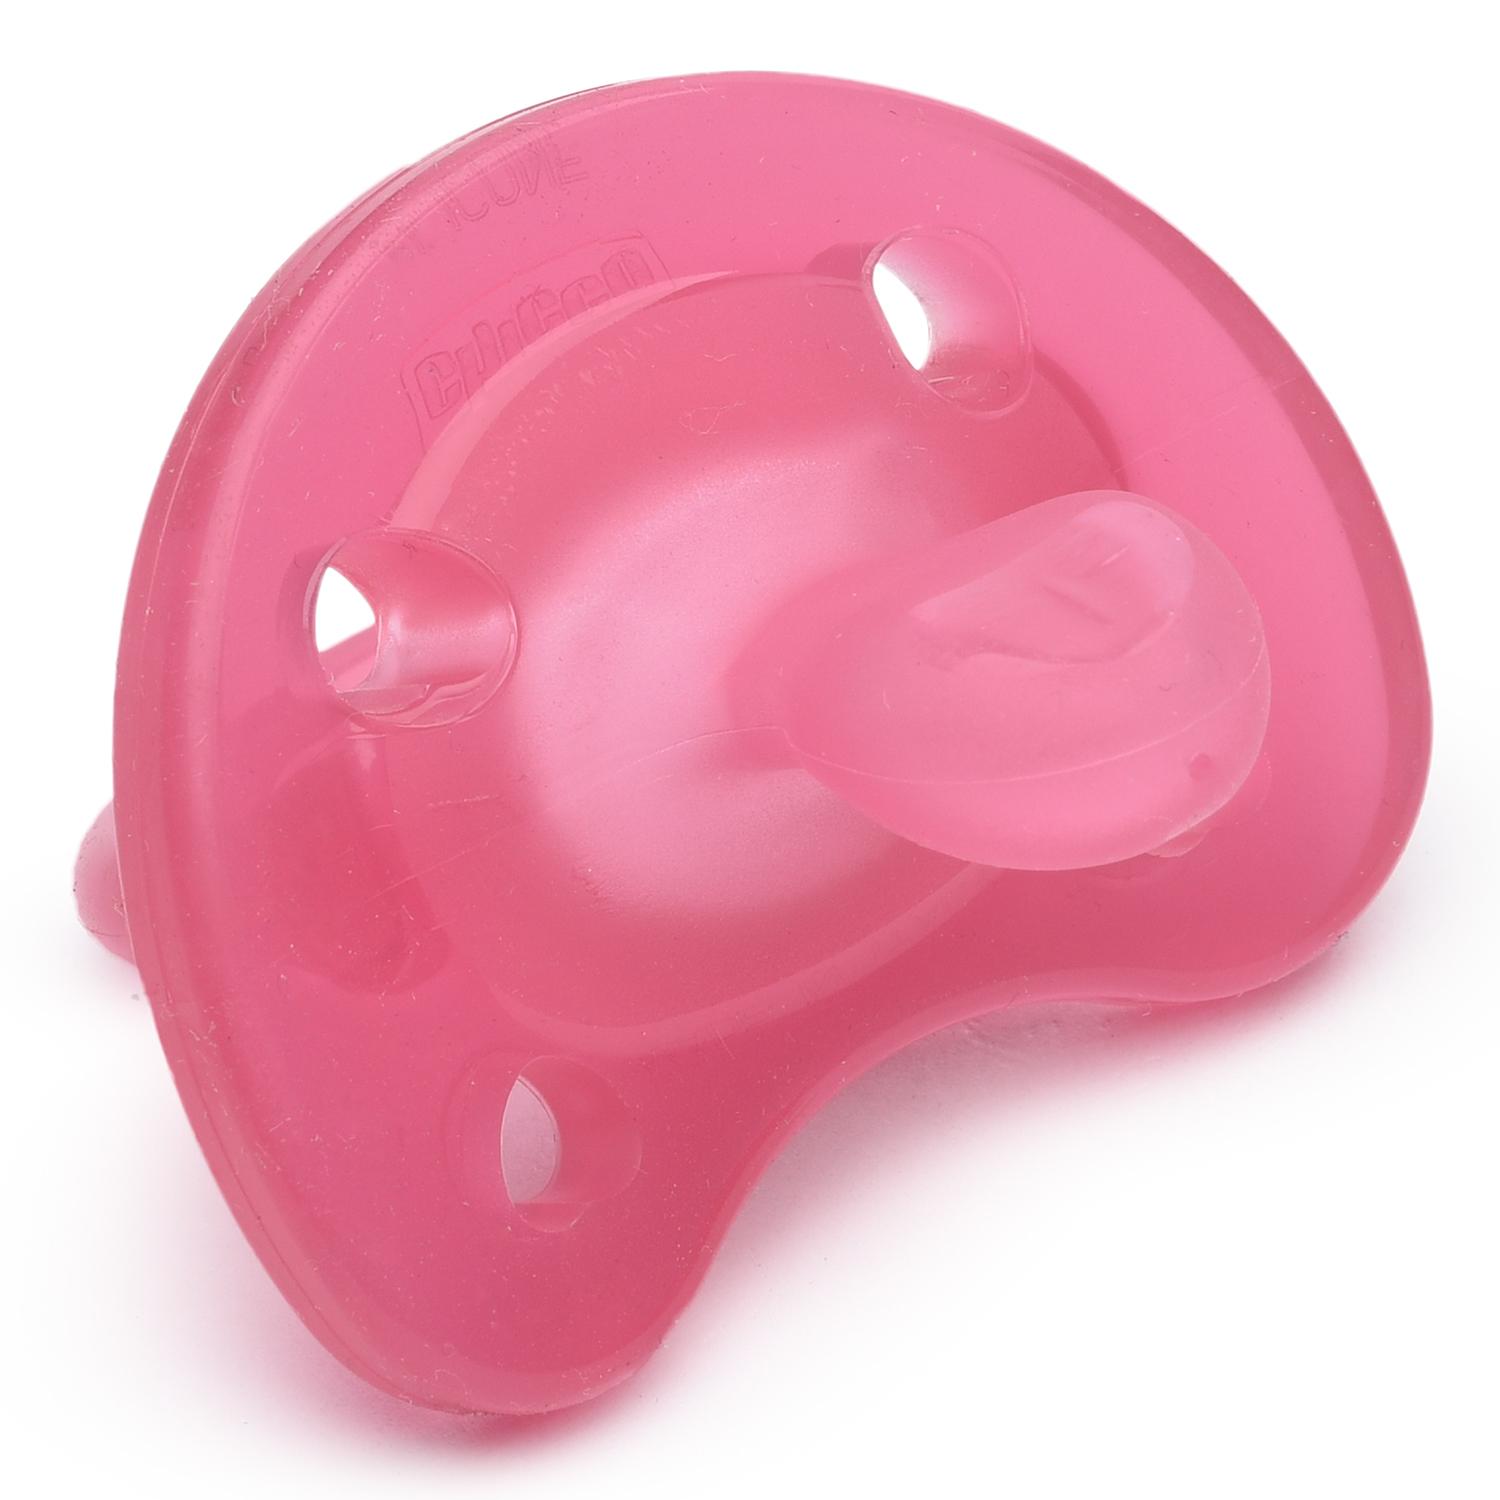 Пустышка Physio Soft для детей от 0 до 6 месяцев, розовая  